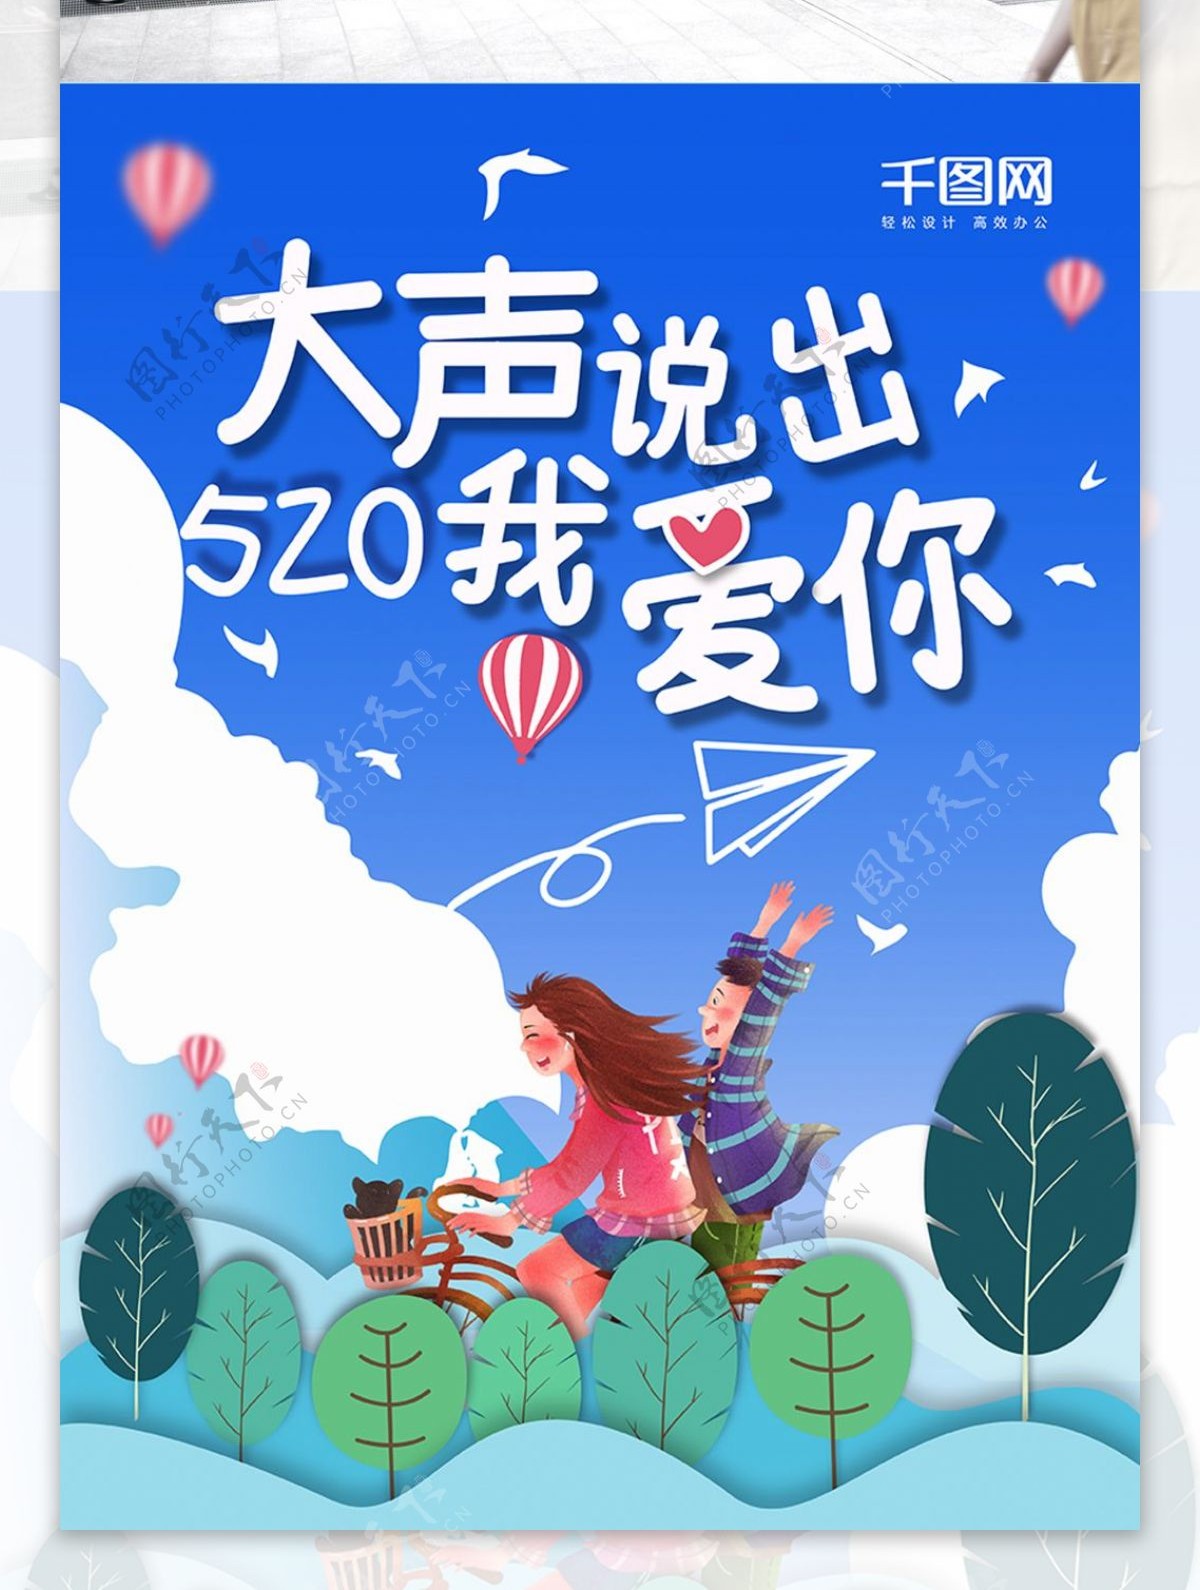 520节日宣传海报